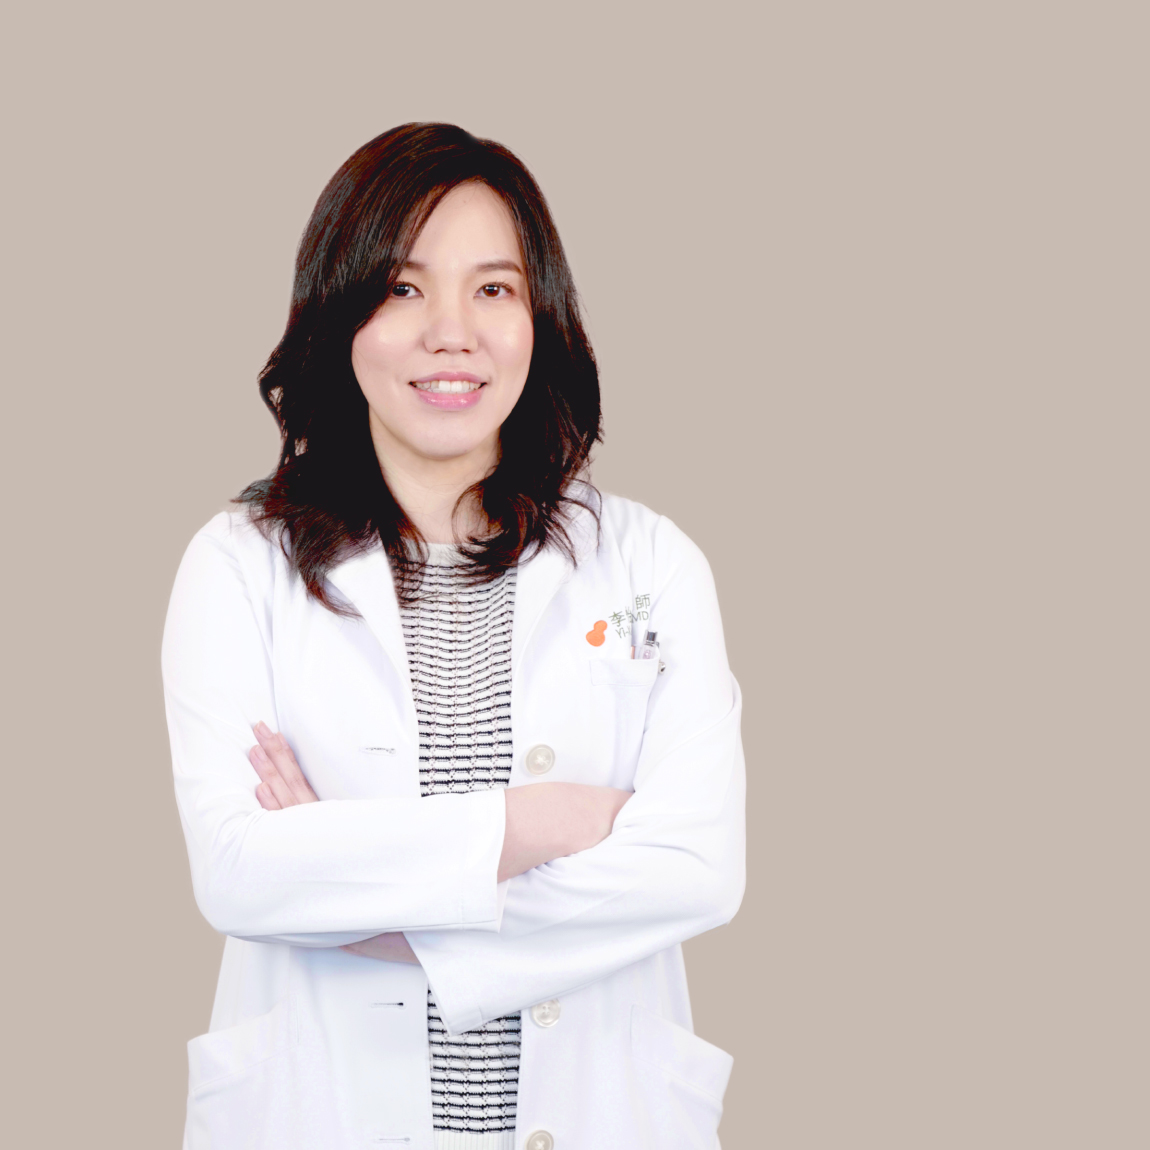 李怡萱  Dr. リー Yi-Xuan Lee, MD., 医師.